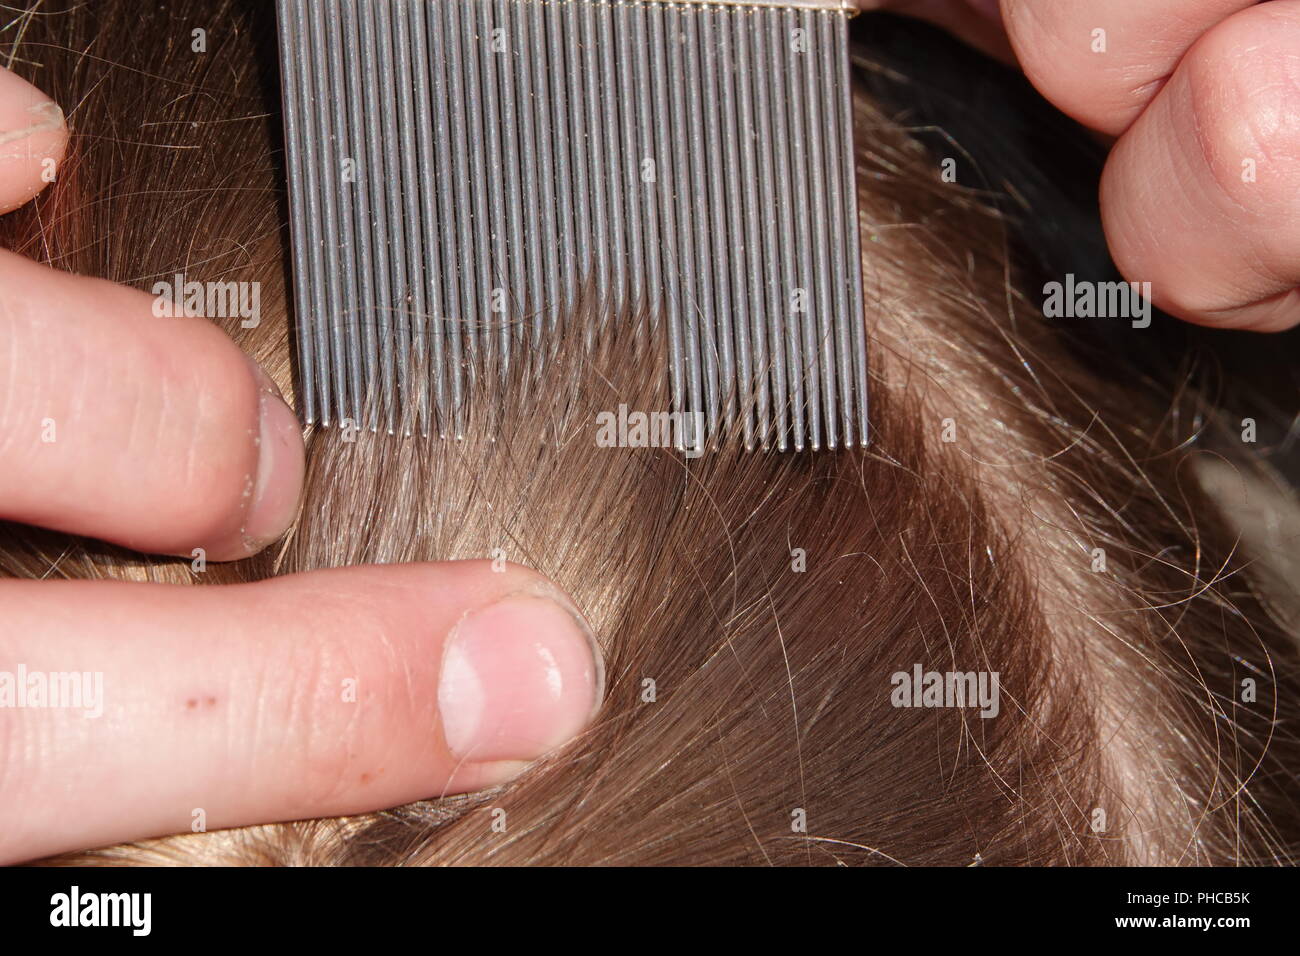 Kopfläuse Infektion häufig bei jungen Menschen. Die Haare werden mit einem  speziellen Kopfläuse Kamm überprüft Stockfotografie - Alamy